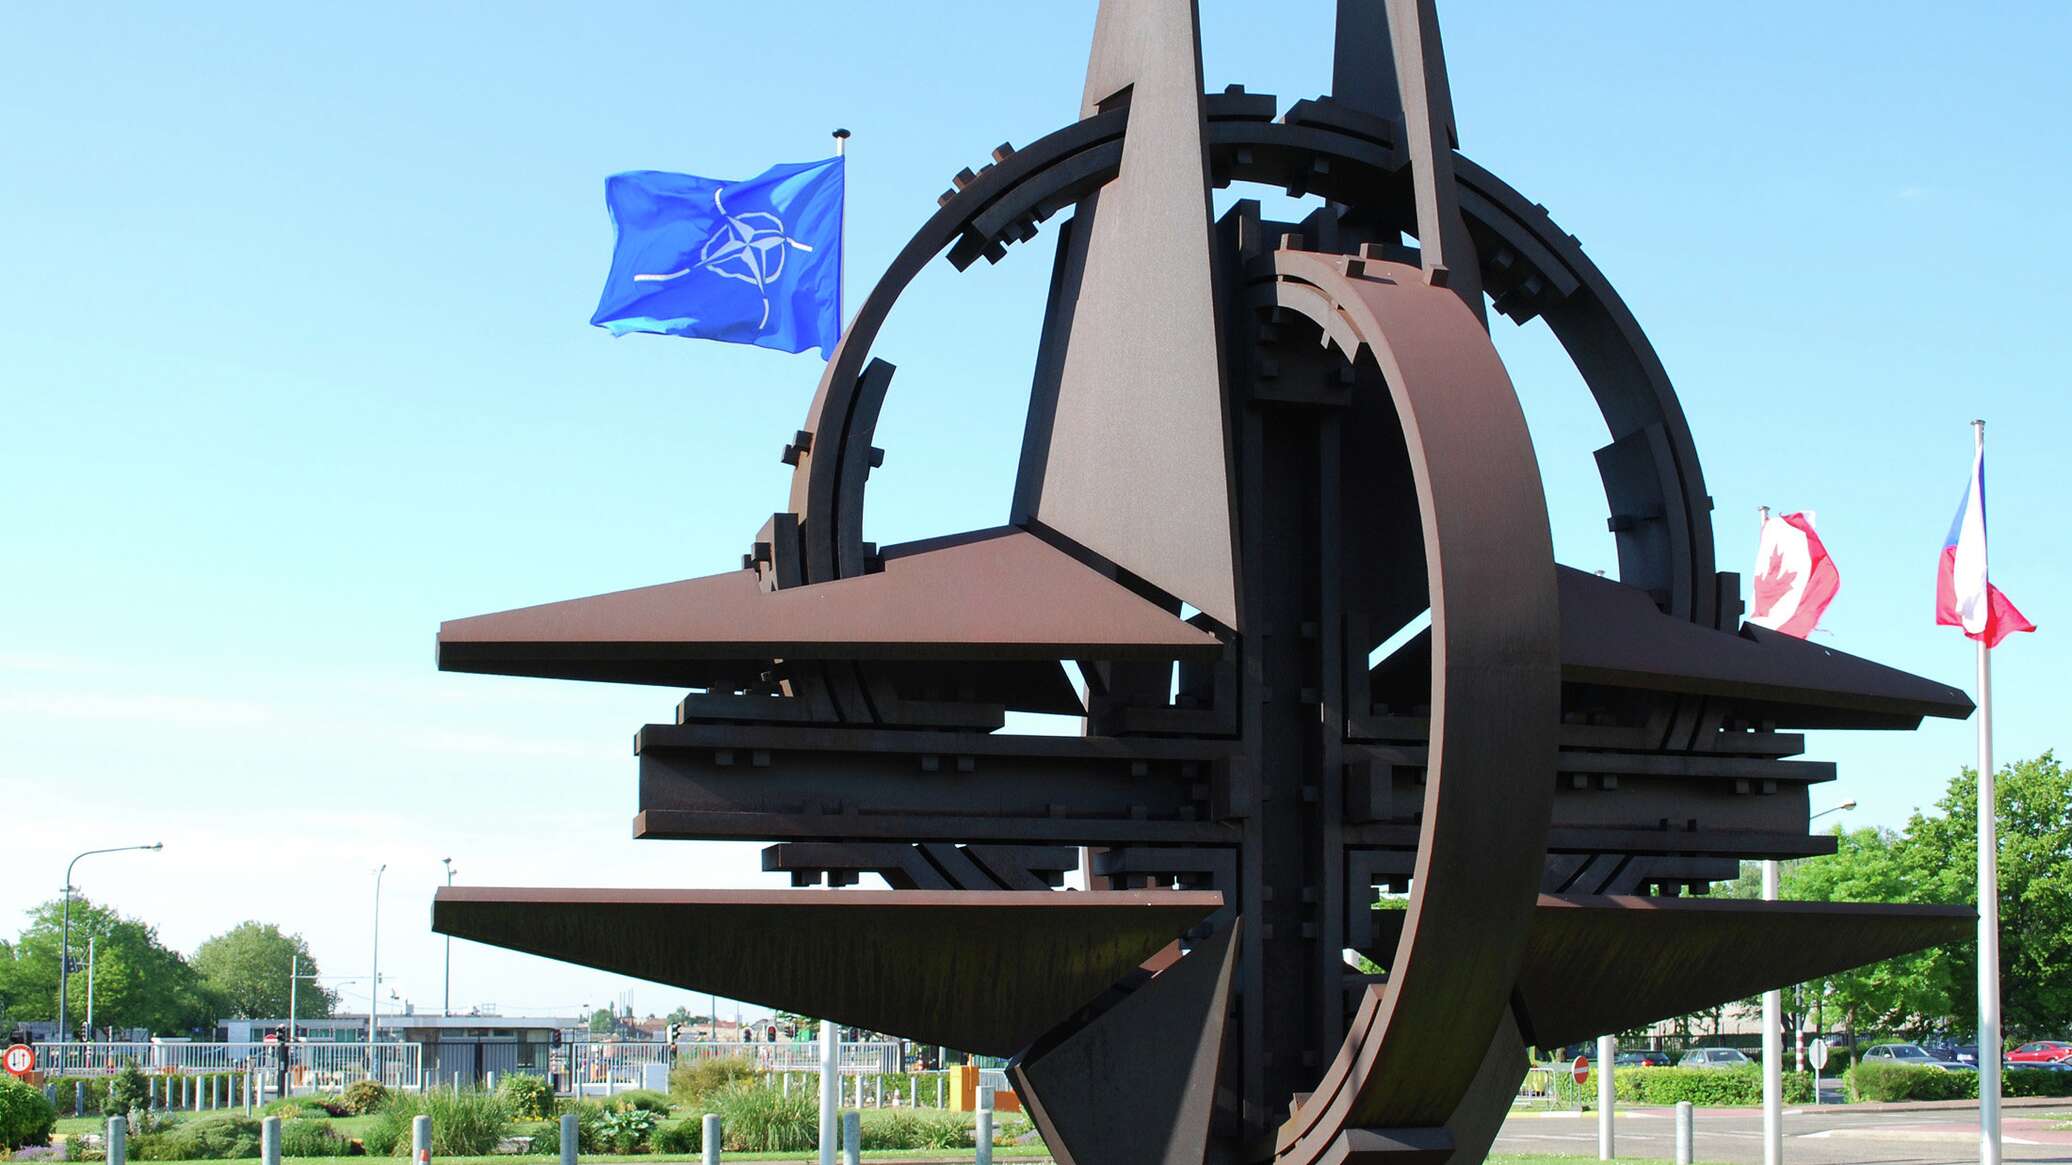 المجر: "الناتو" يعترف بأن "الهجوم المضاد" الأوكراني بعيد عن التوقعات